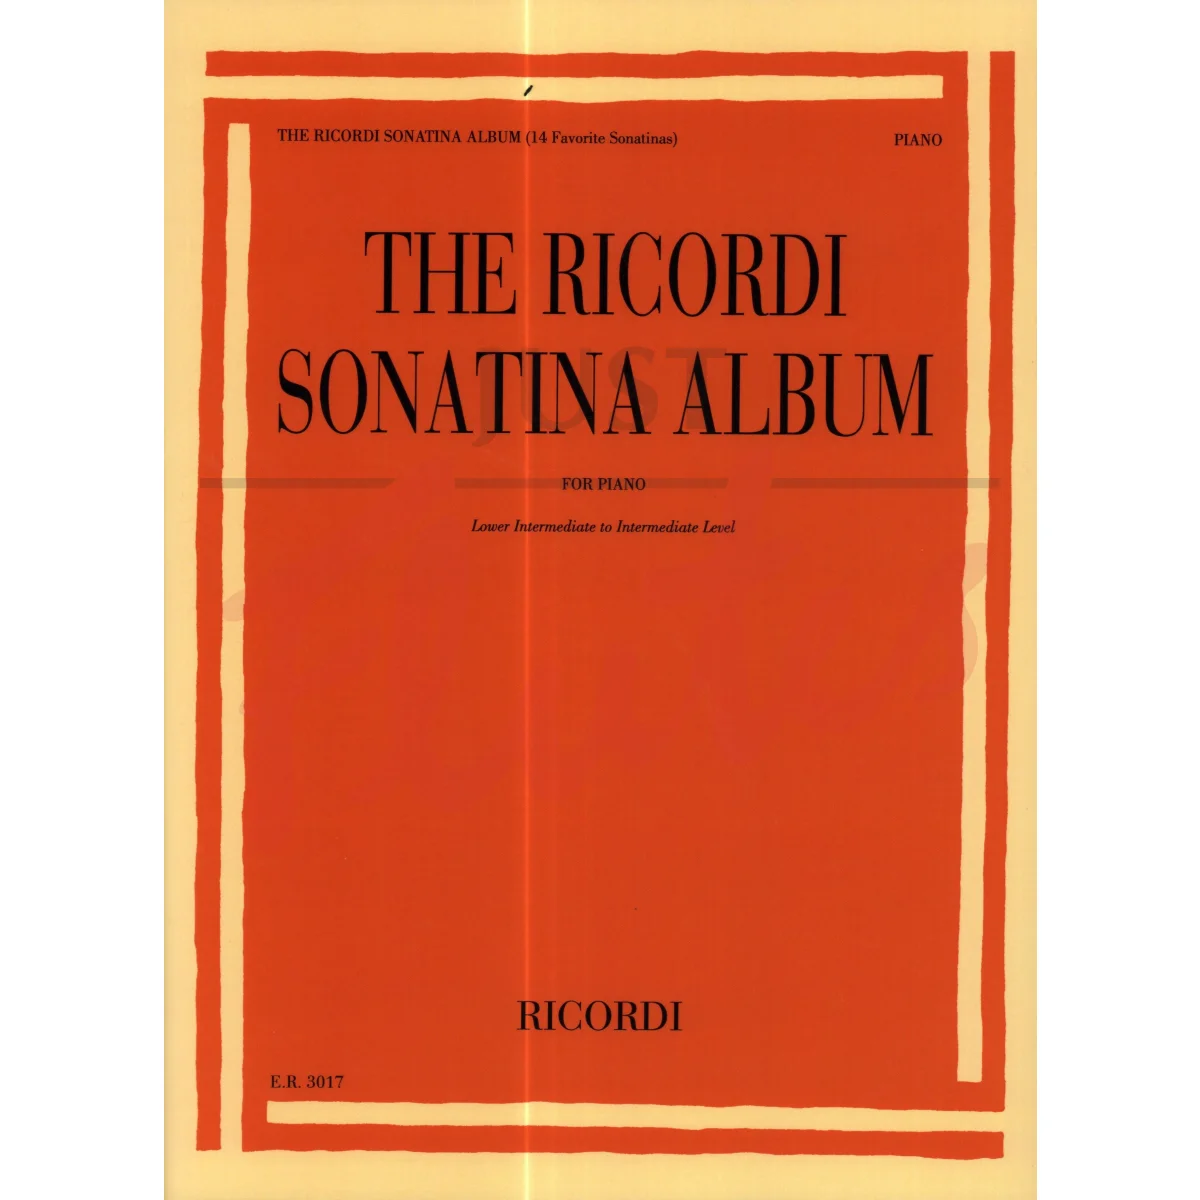 The Ricordi Sonatina Album for Piano